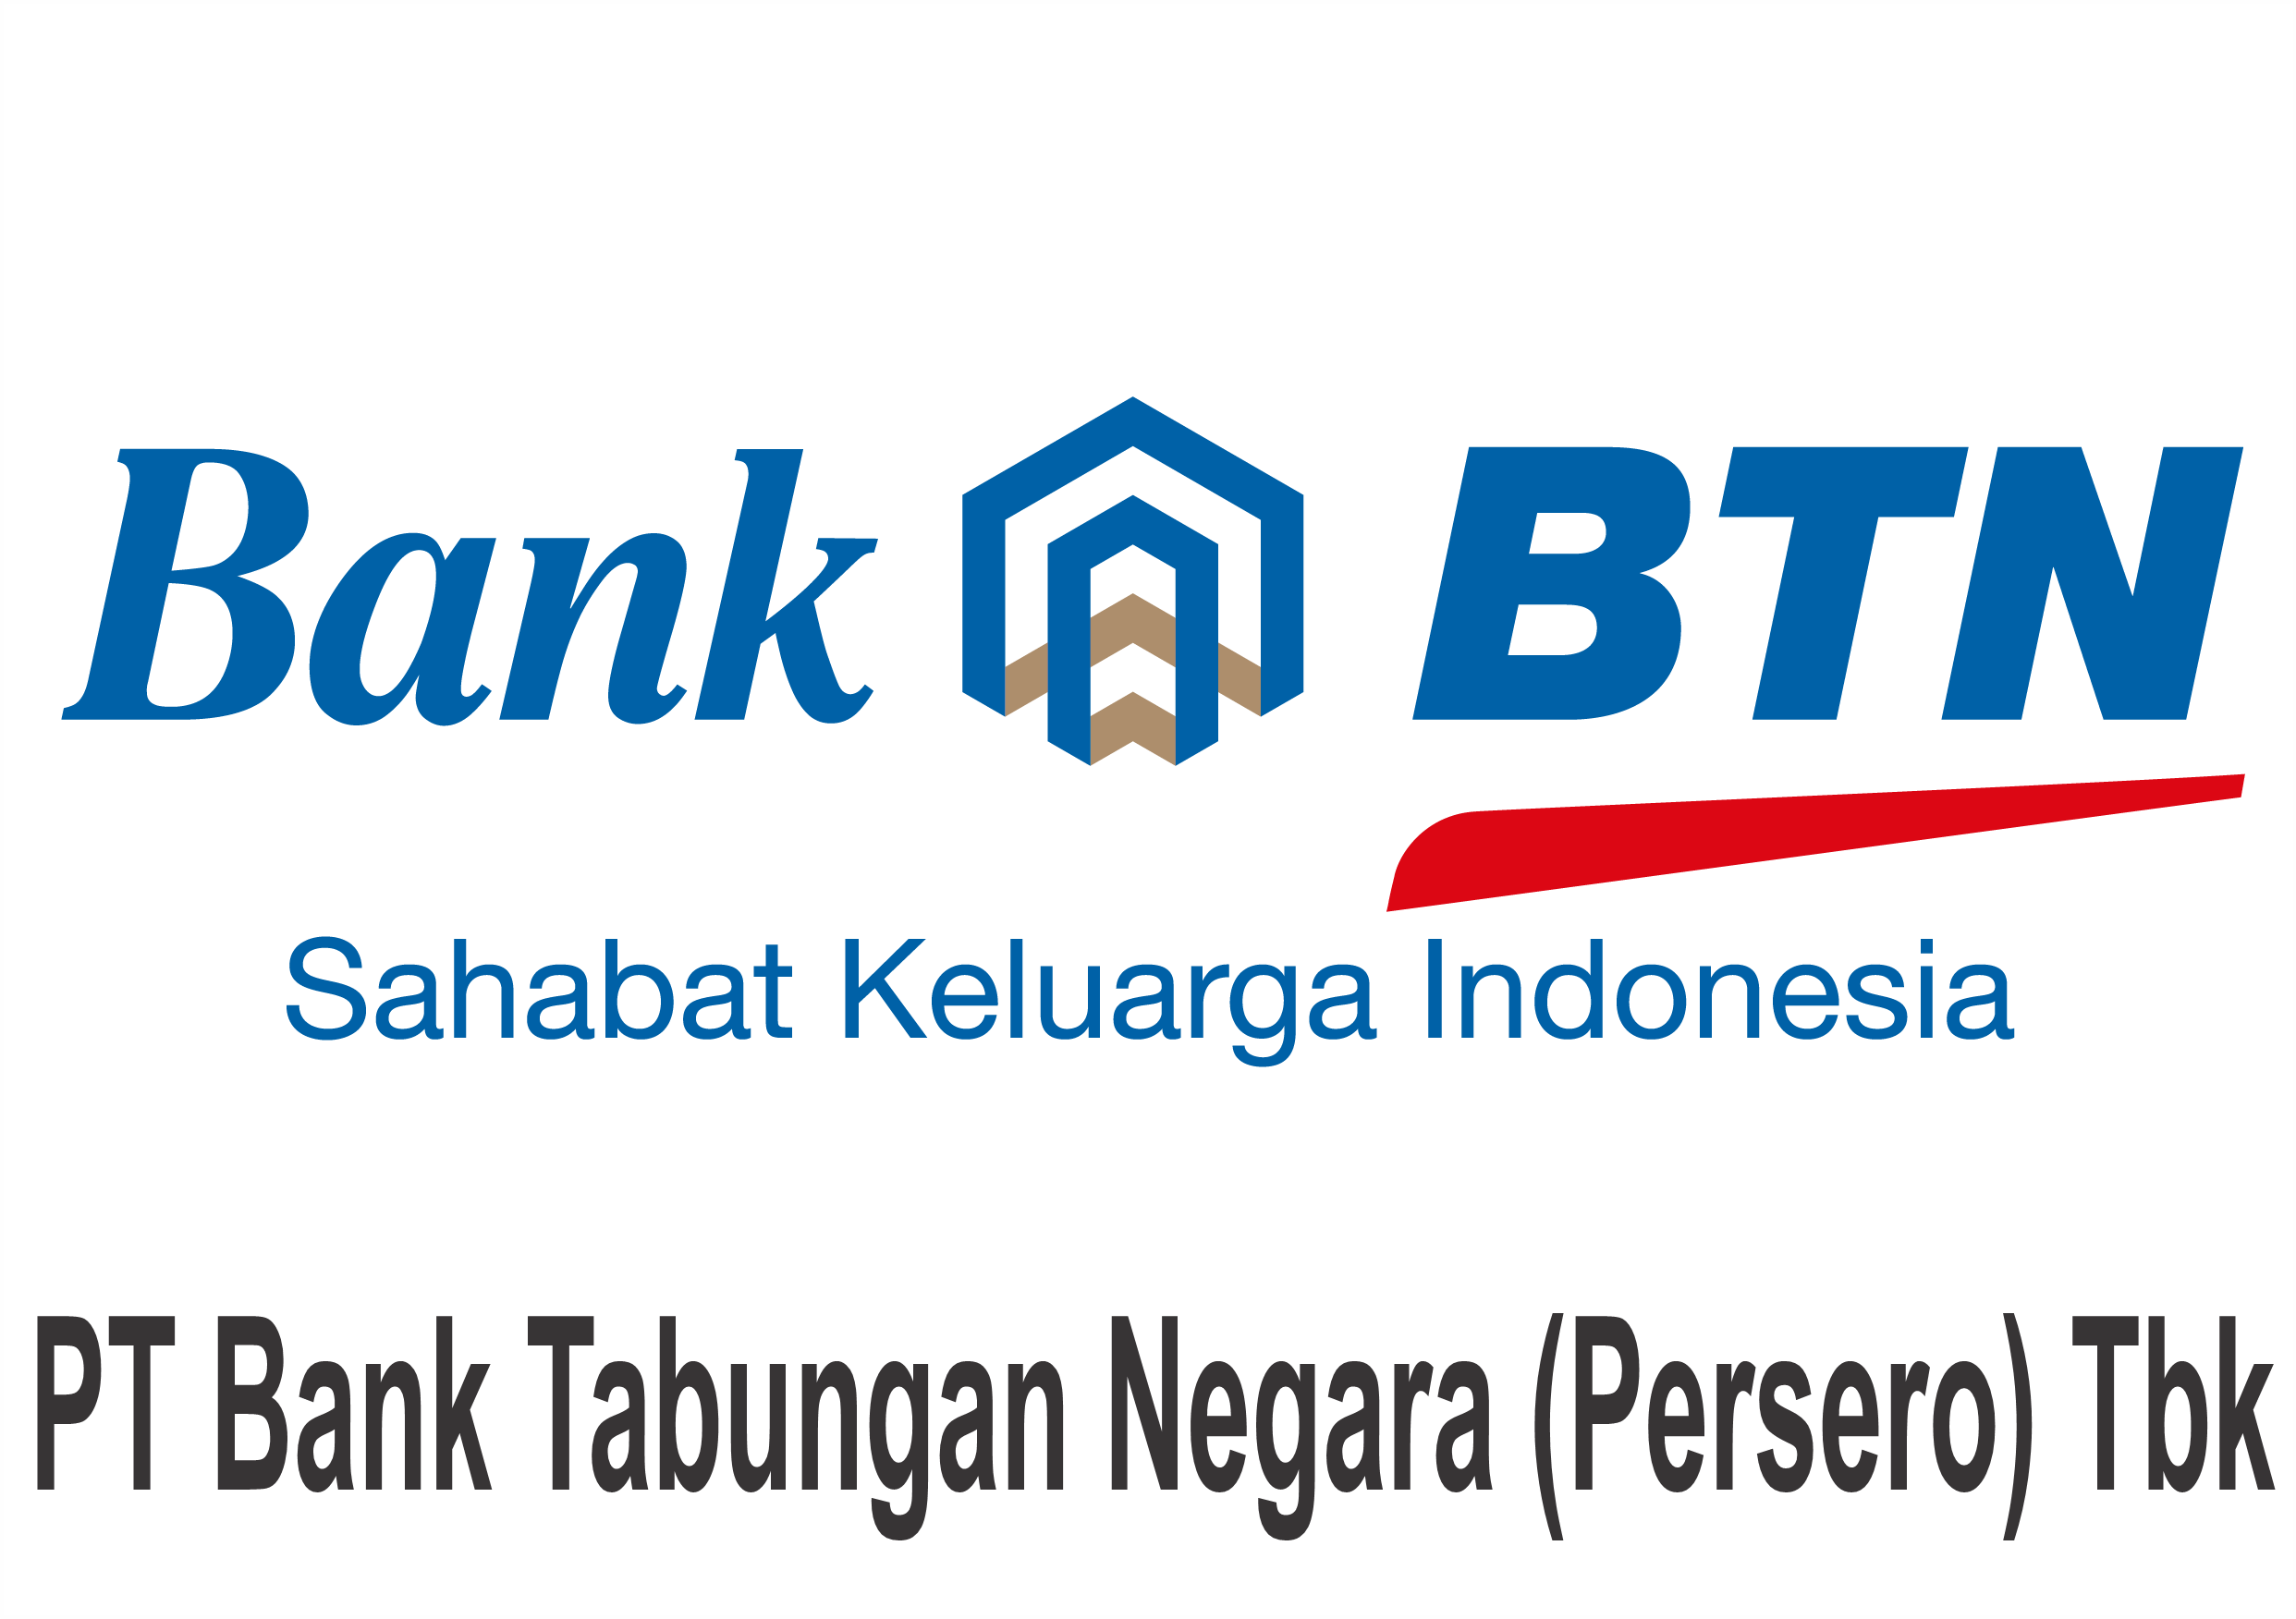 PT Bank Tabungan Negara (Persero) Tbk